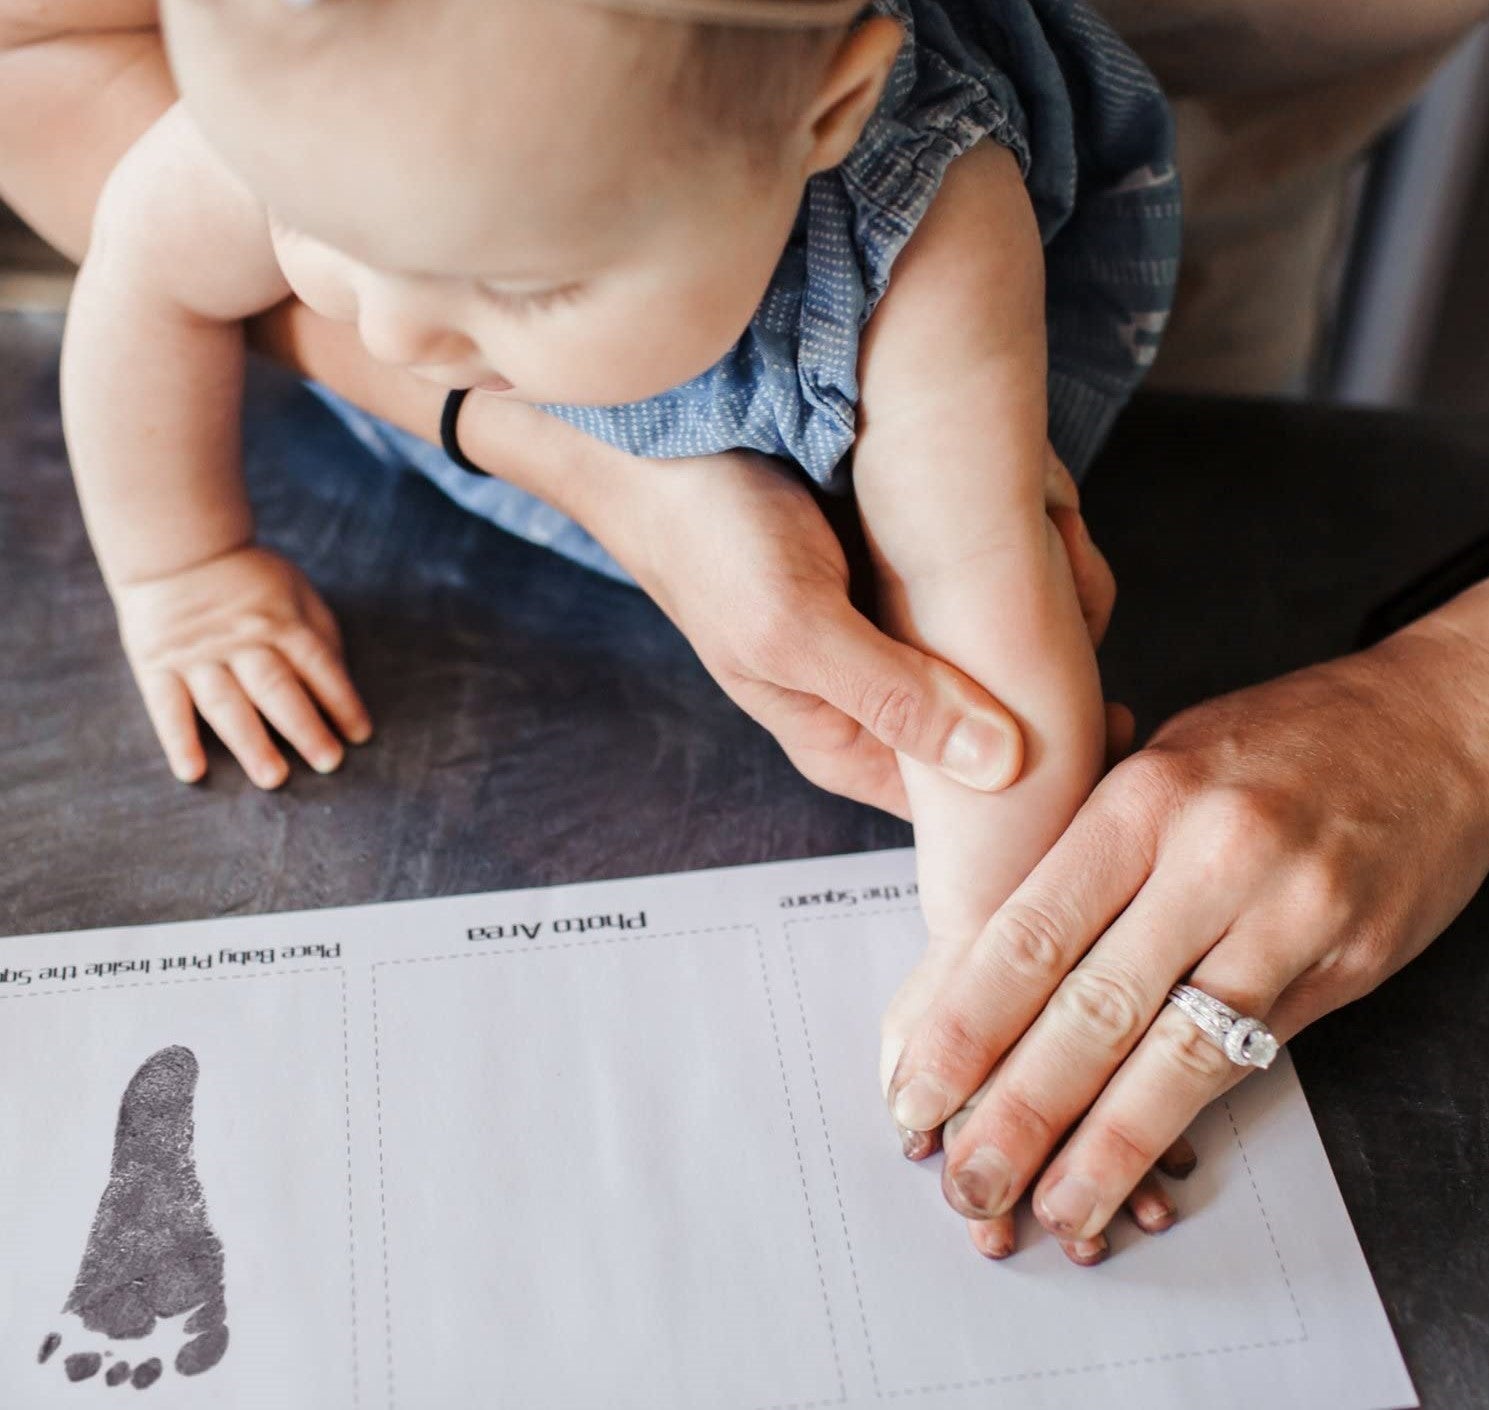 Marco huellas bebés con tinta, regalo para recién nacidos I HuBorns